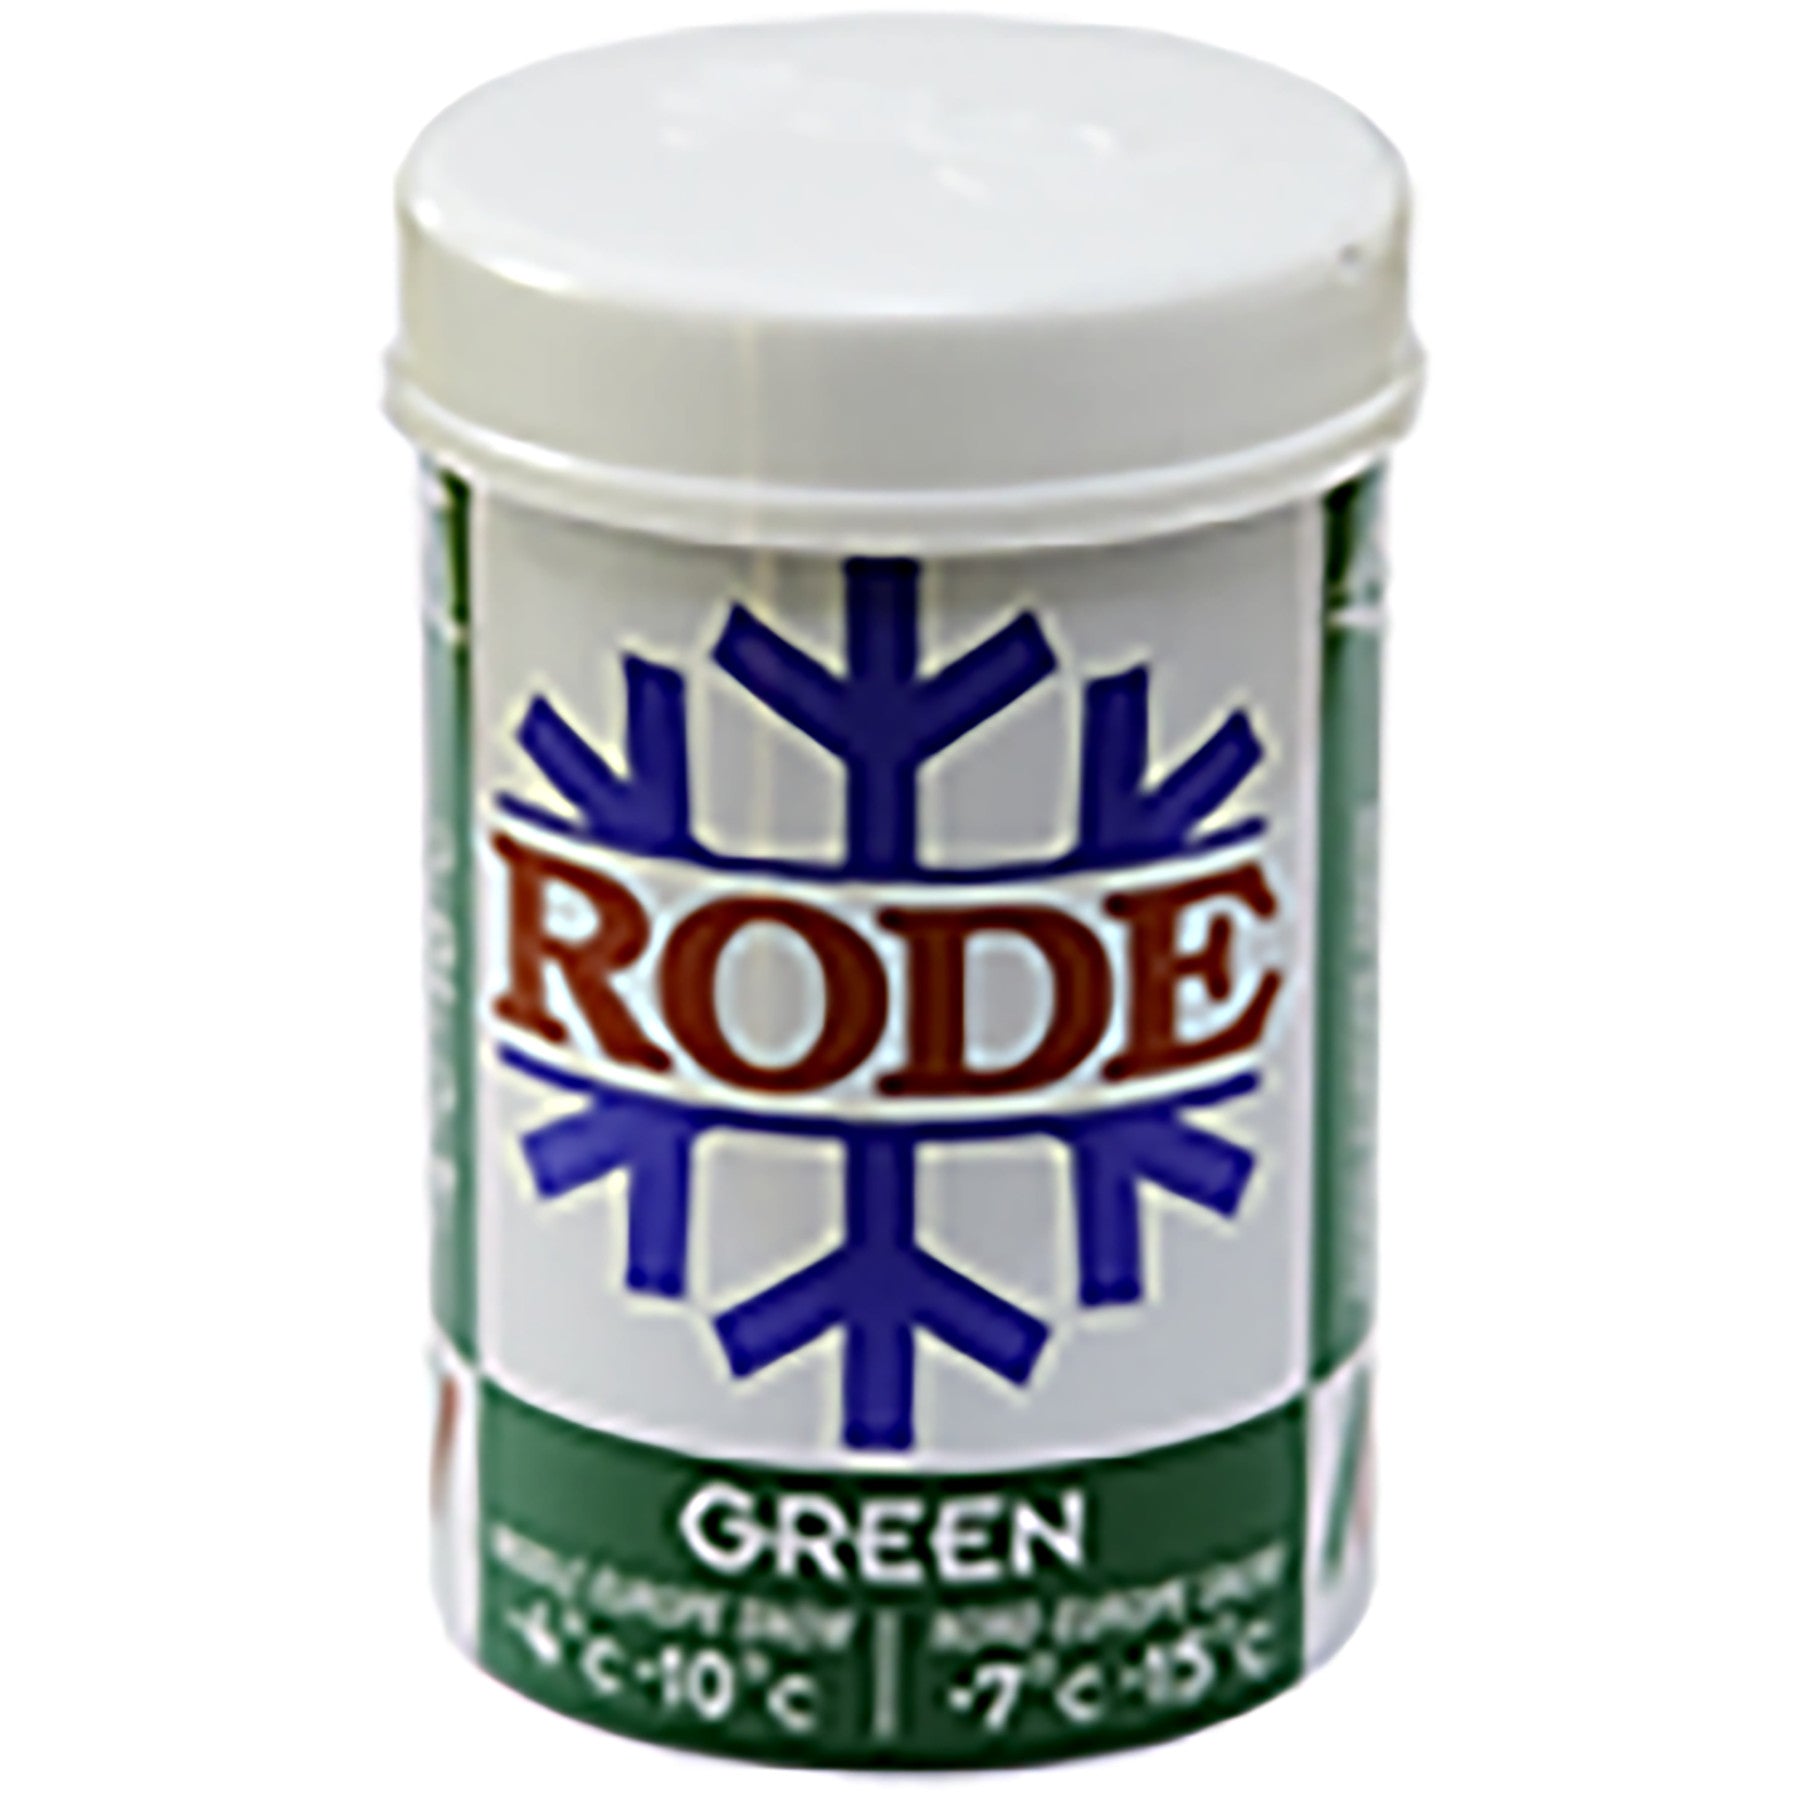 Buy green Rode Kick Basic